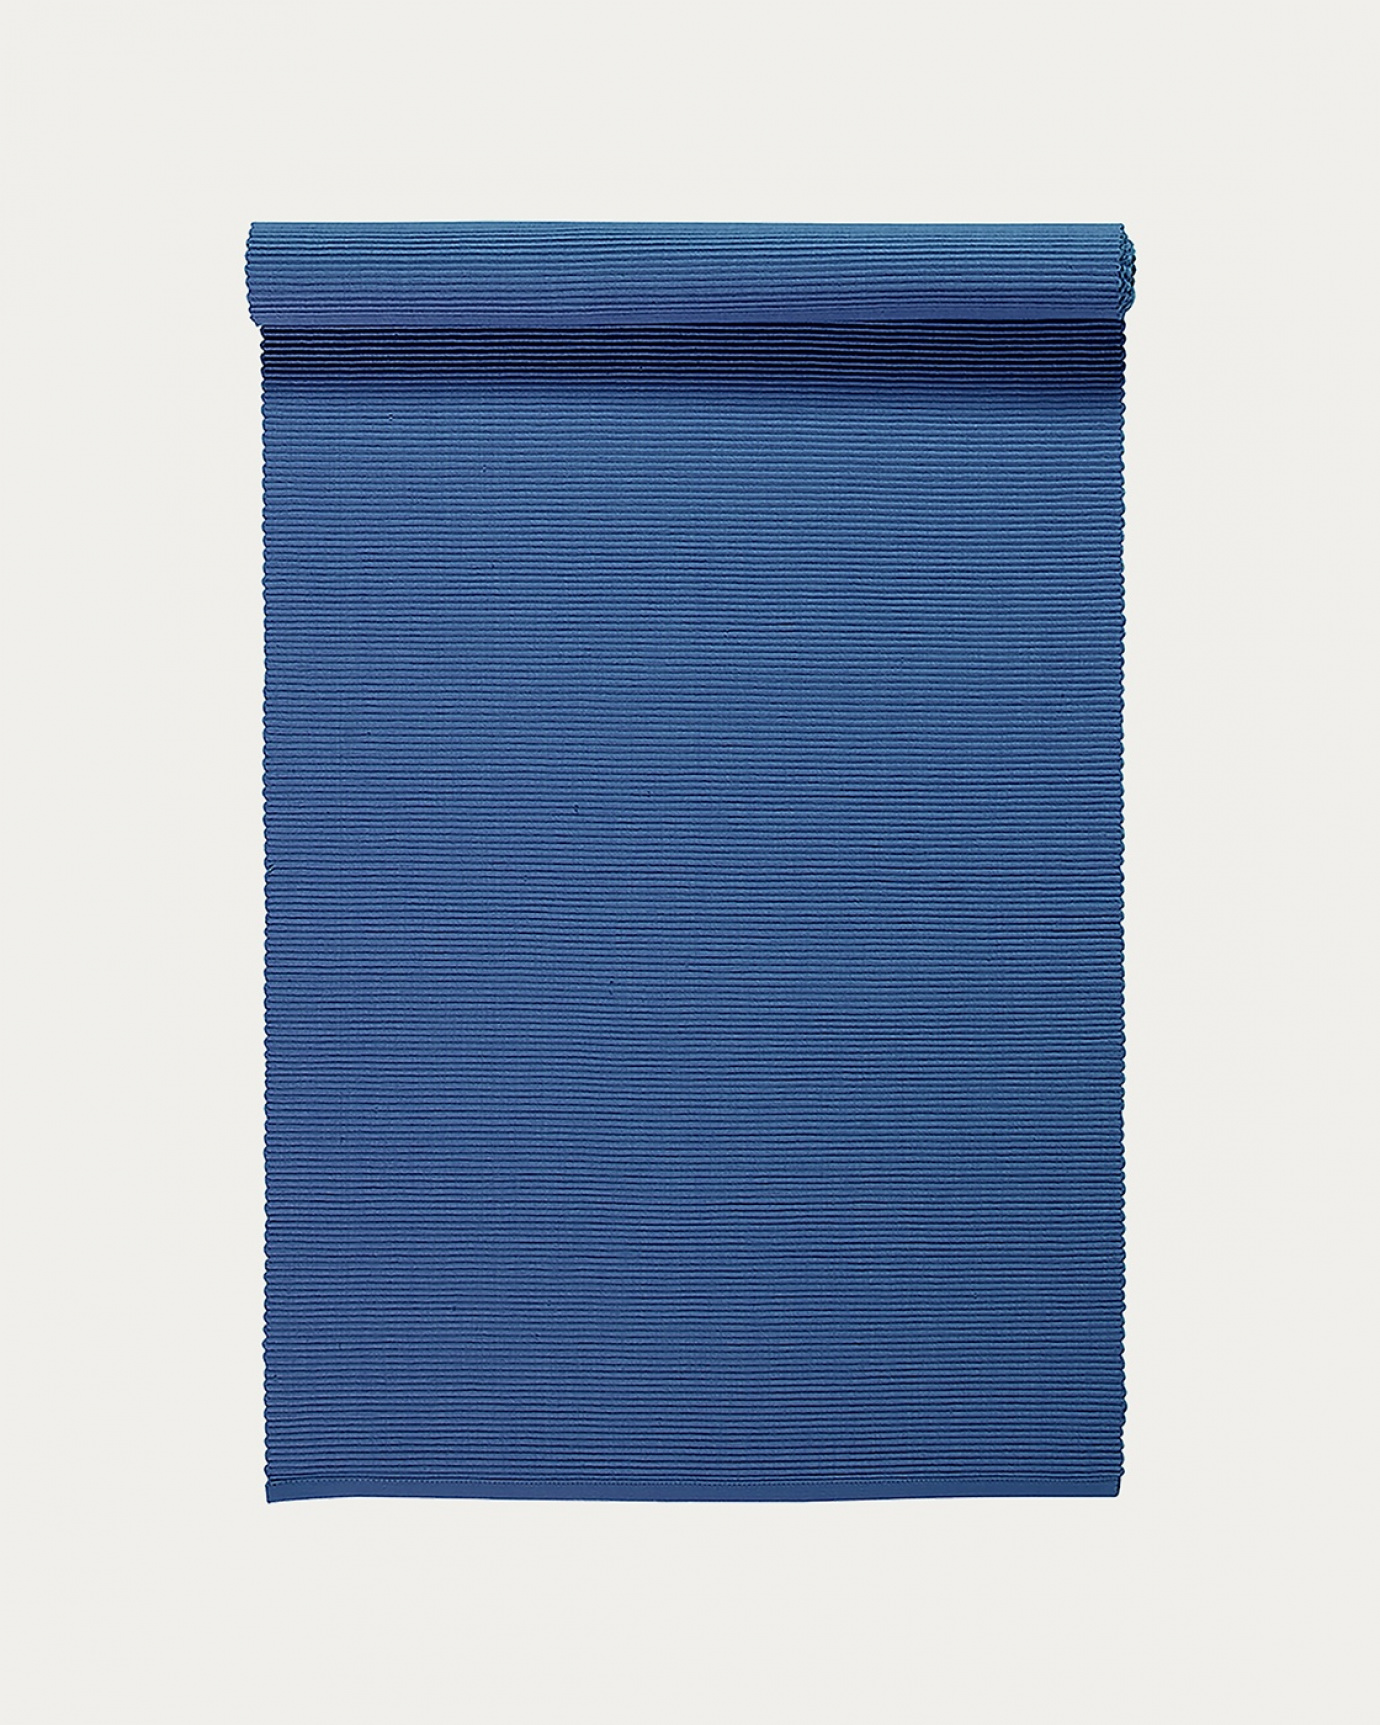 Produktbild helles marineblau UNI Tischläufer aus weicher Baumwolle in Rippenqualität von LINUM DESIGN. Größe 45x150 cm.